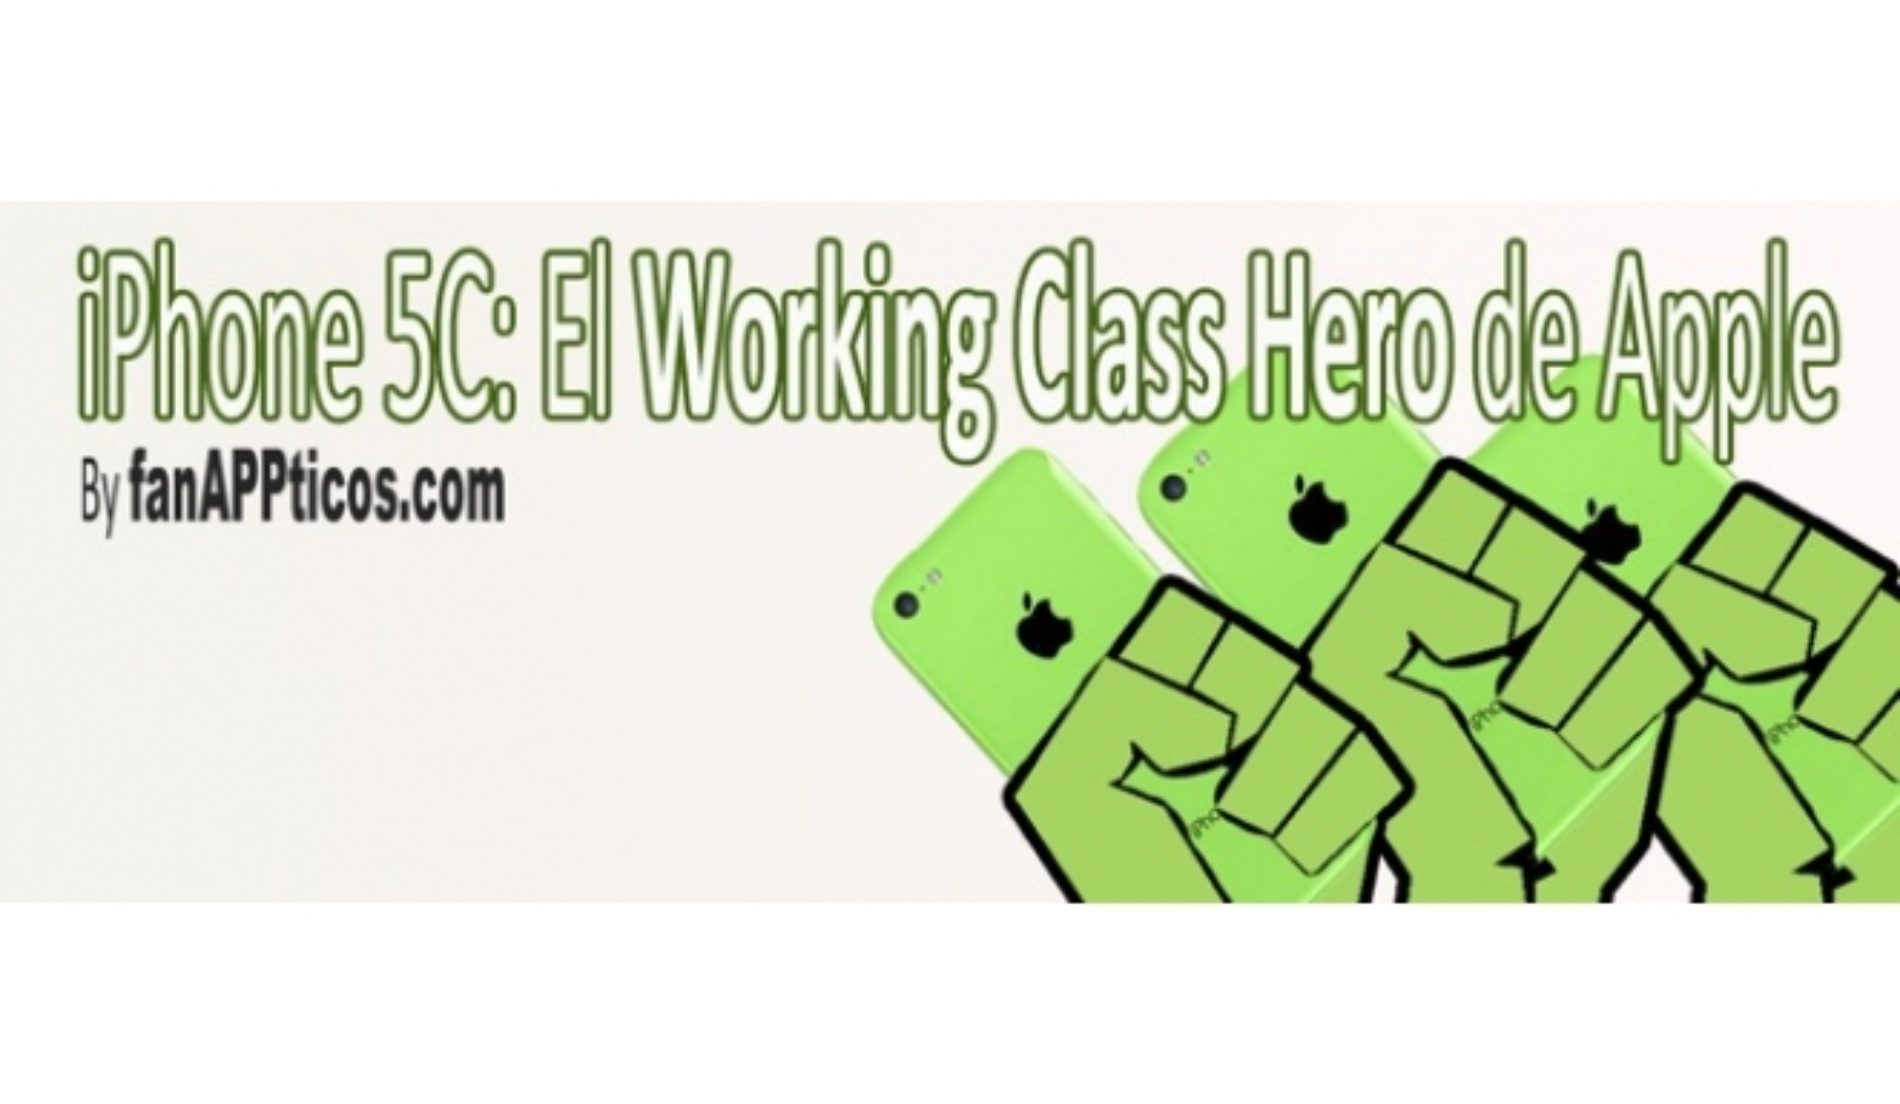 iPhone 5C: El working class hero de Apple